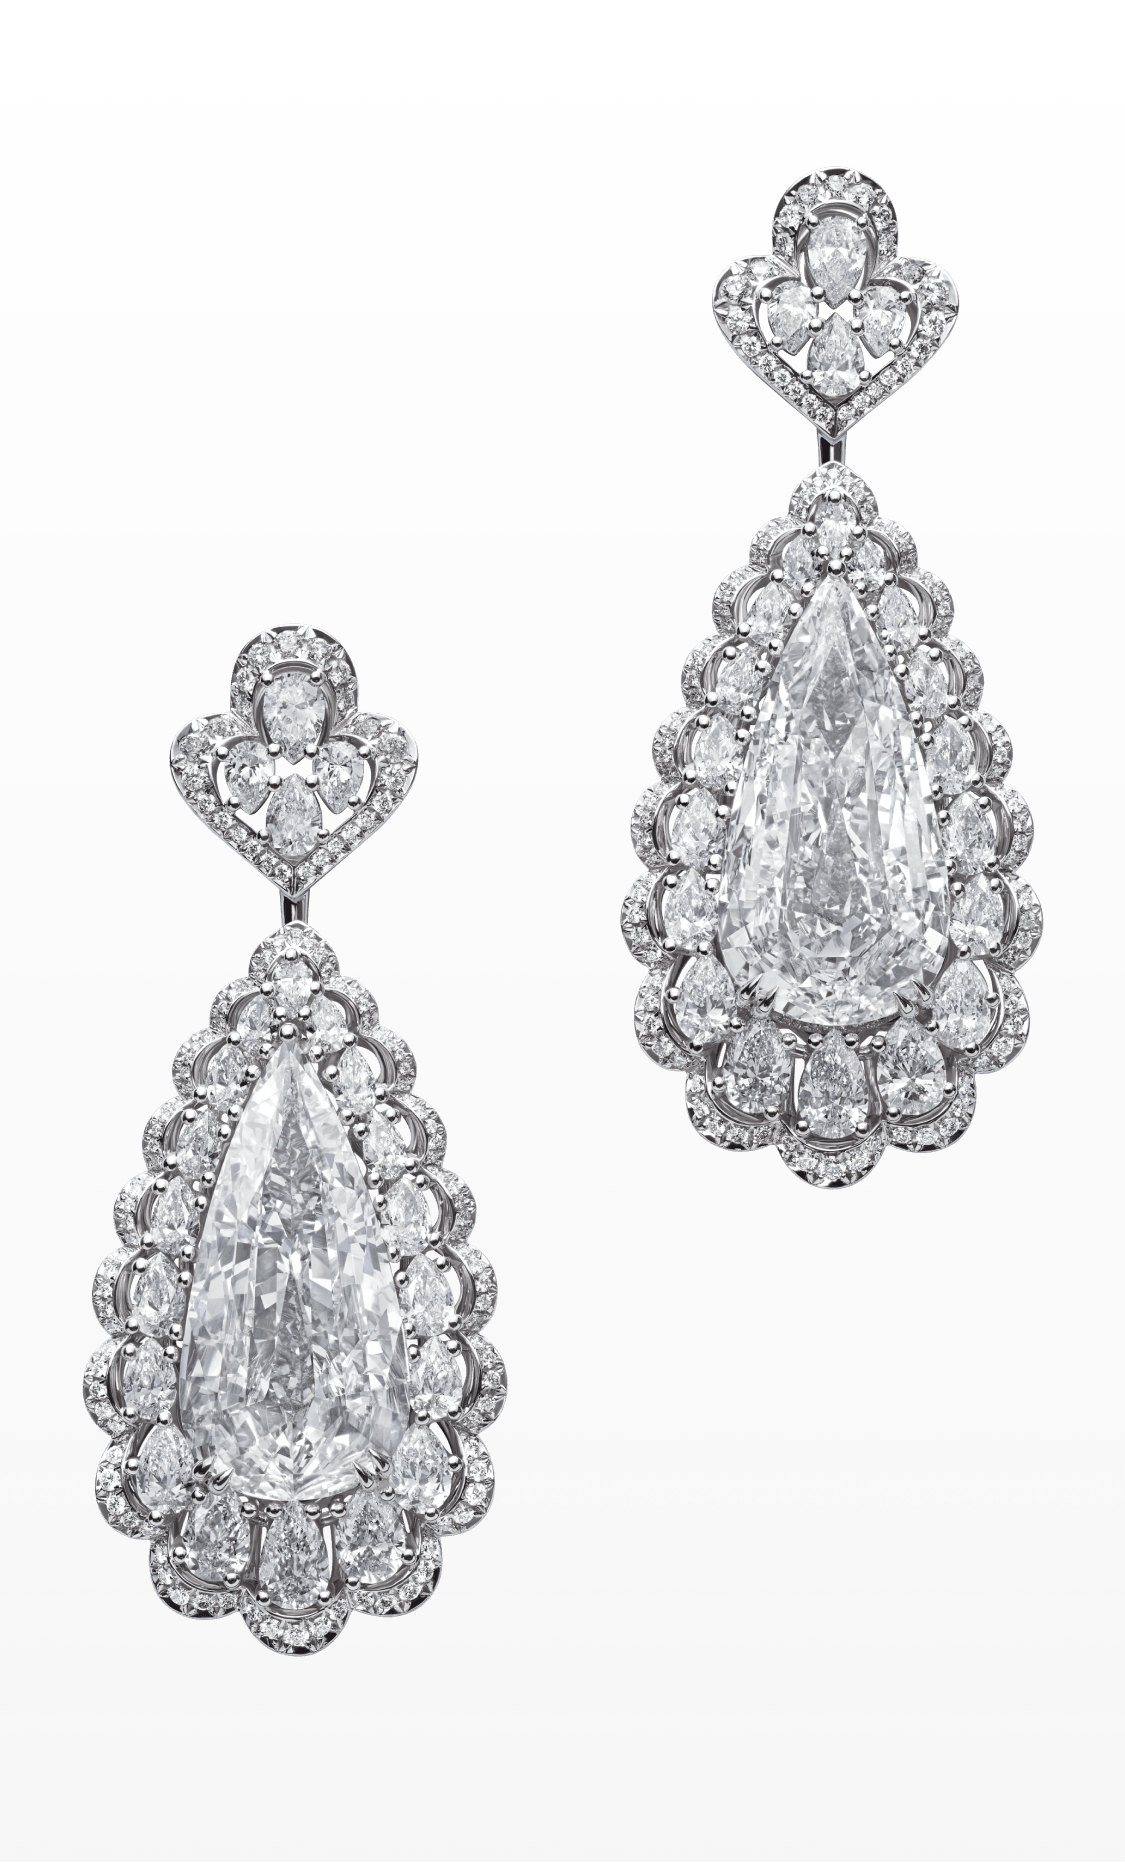  Haute Joaillerie pendant diamond earrings